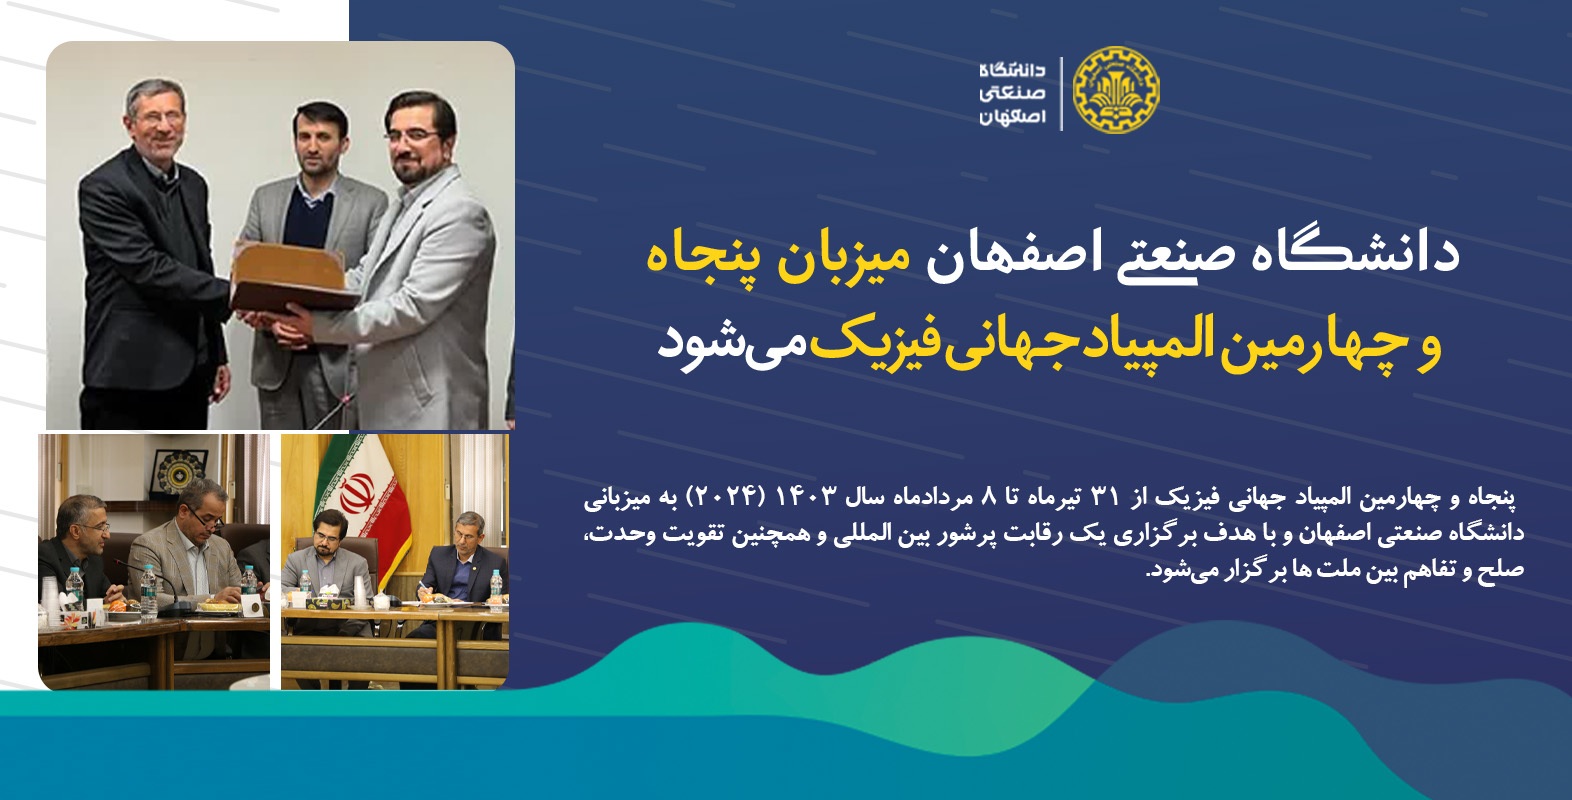 دانشگاه صنعتی اصفهان تیر سال آینده میزبان المپیاد جهانی فیزیک